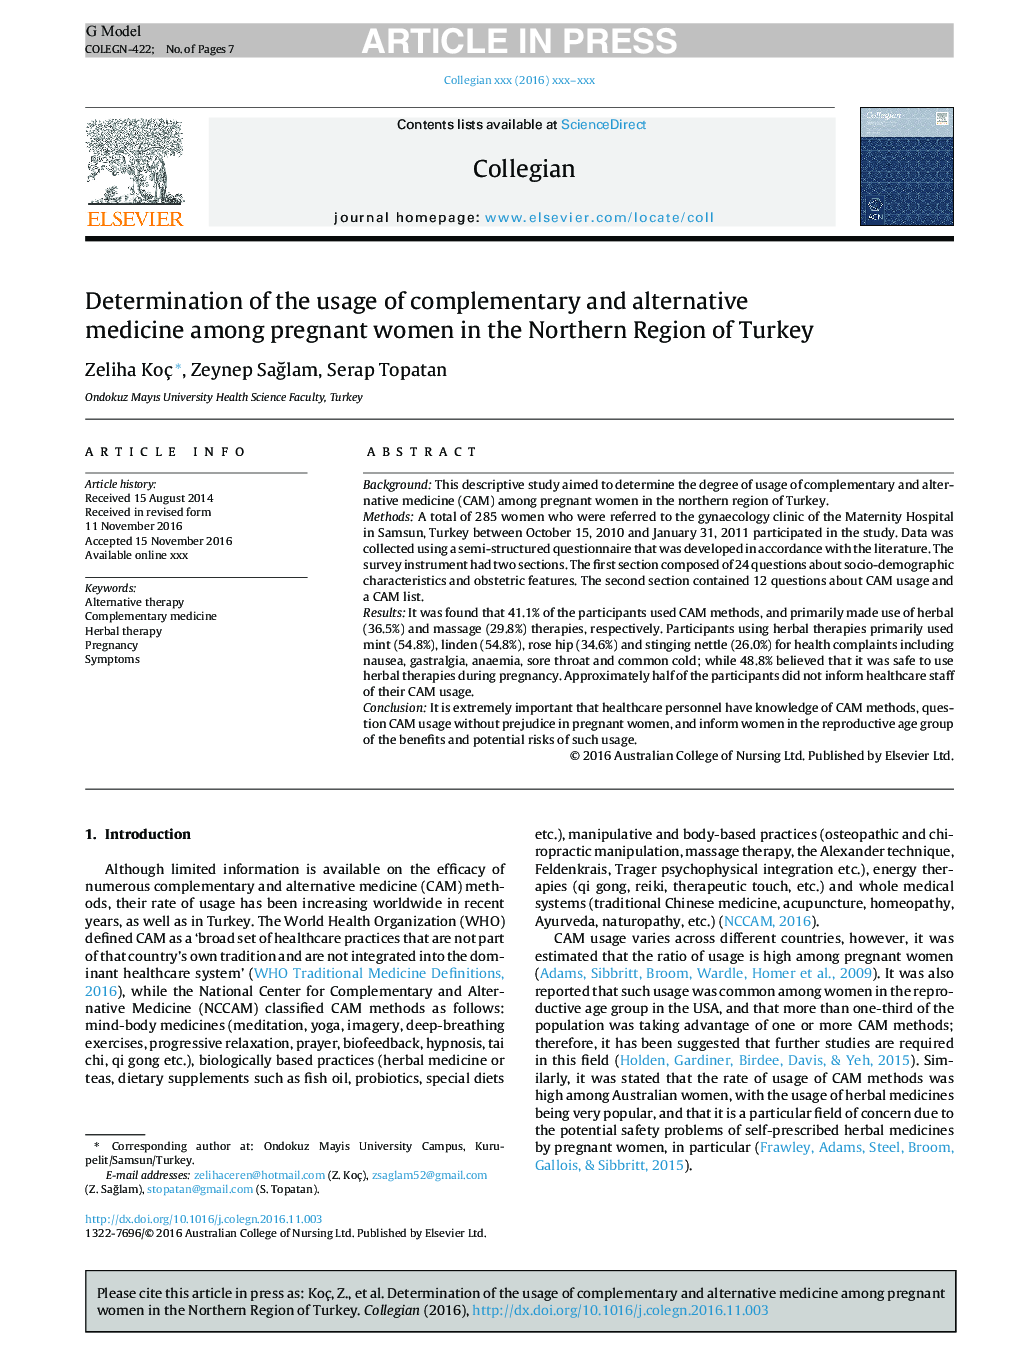 تعیین استفاده از طب مکمل و جایگزین در زنان باردار در منطقه شمال ترکیه 